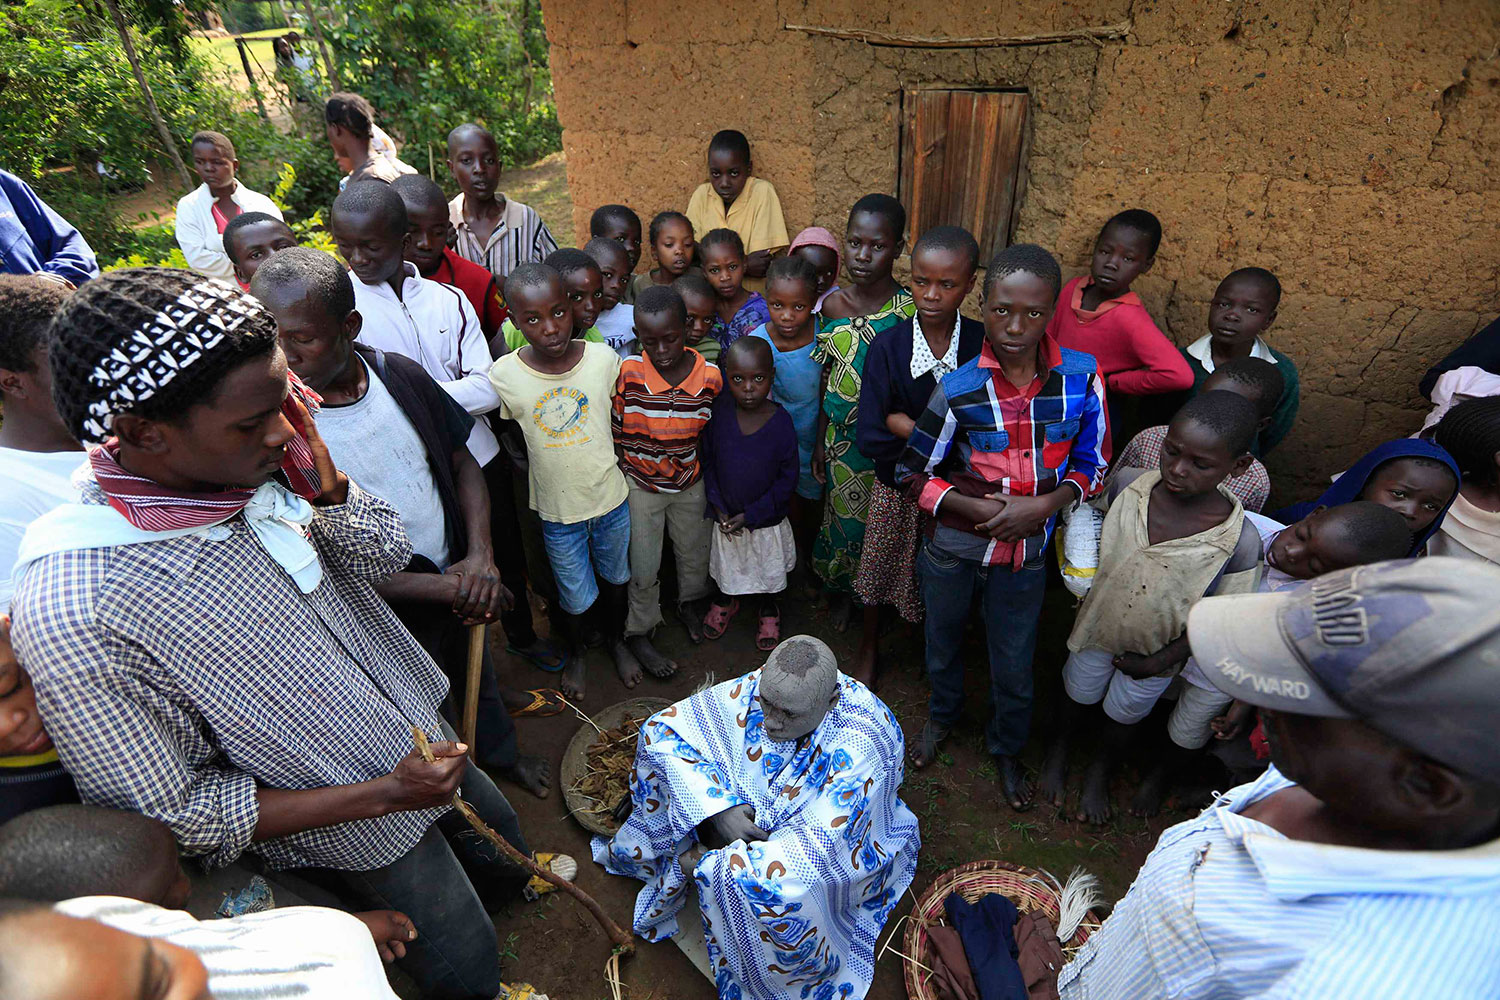 Los jovenes de la etnia Bukusu se someten al ritual de la circuncisión para pasar a la edad adulta